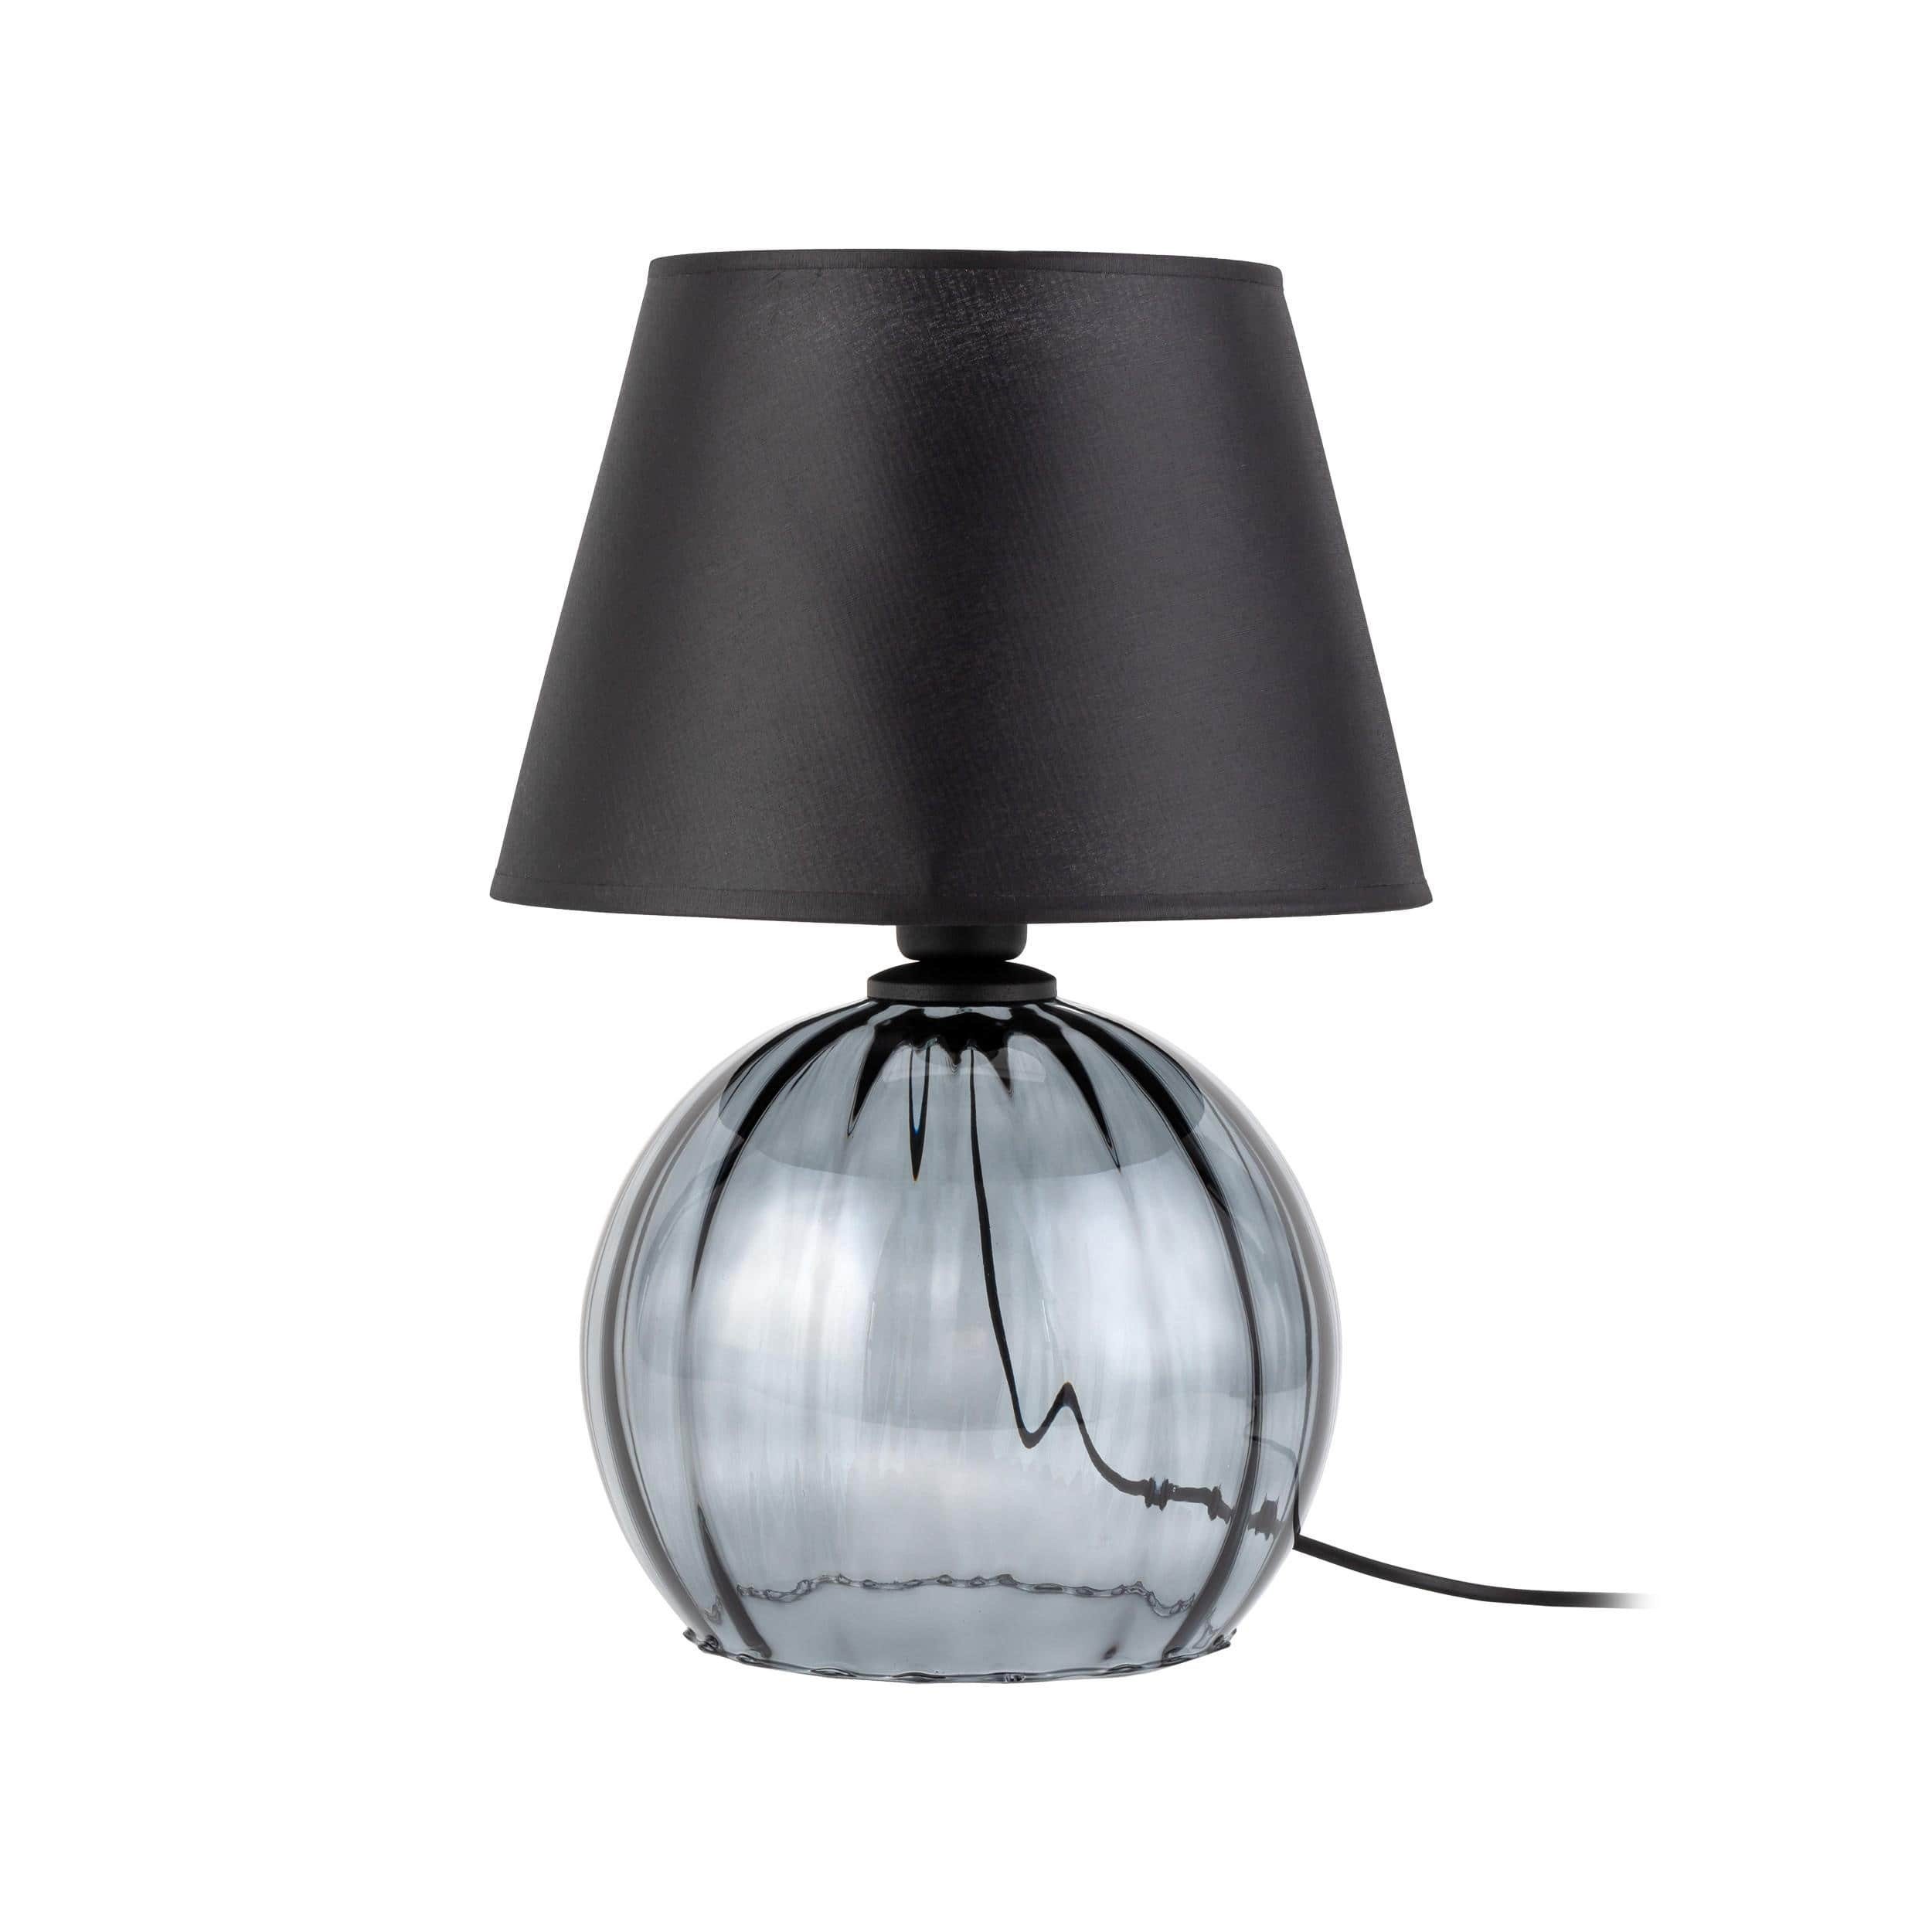 Signature Home Collection Nachttischlampe Tischlampe schwarz, Lampenschirm Nachttischlampe, Glas warmweiß, grau mit Glaslampe bauchig ohne Leuchtmittel